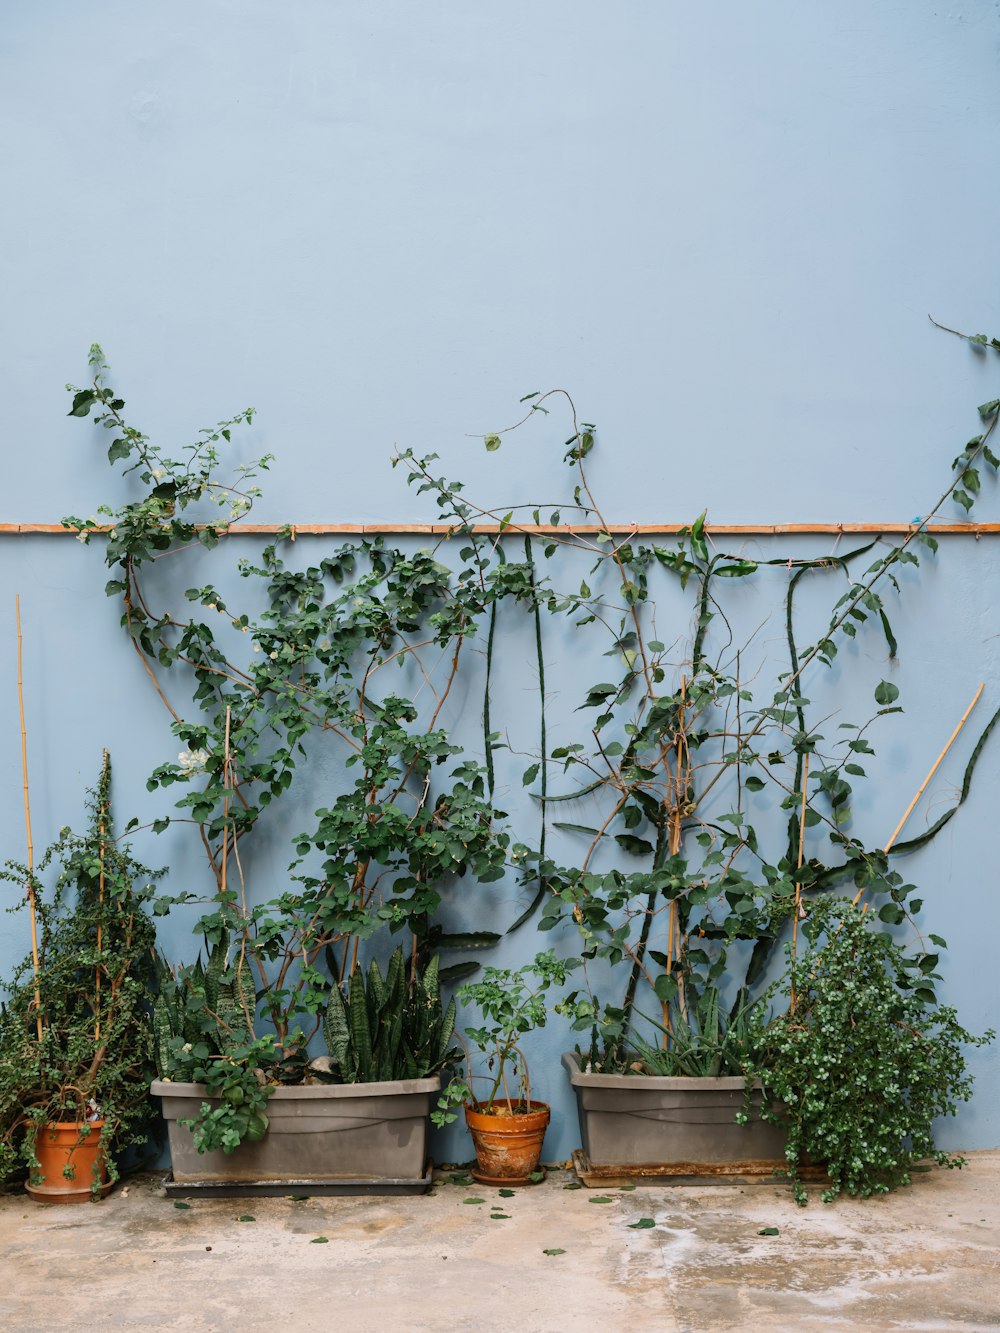 Un grupo de plantas en macetas contra una pared azul